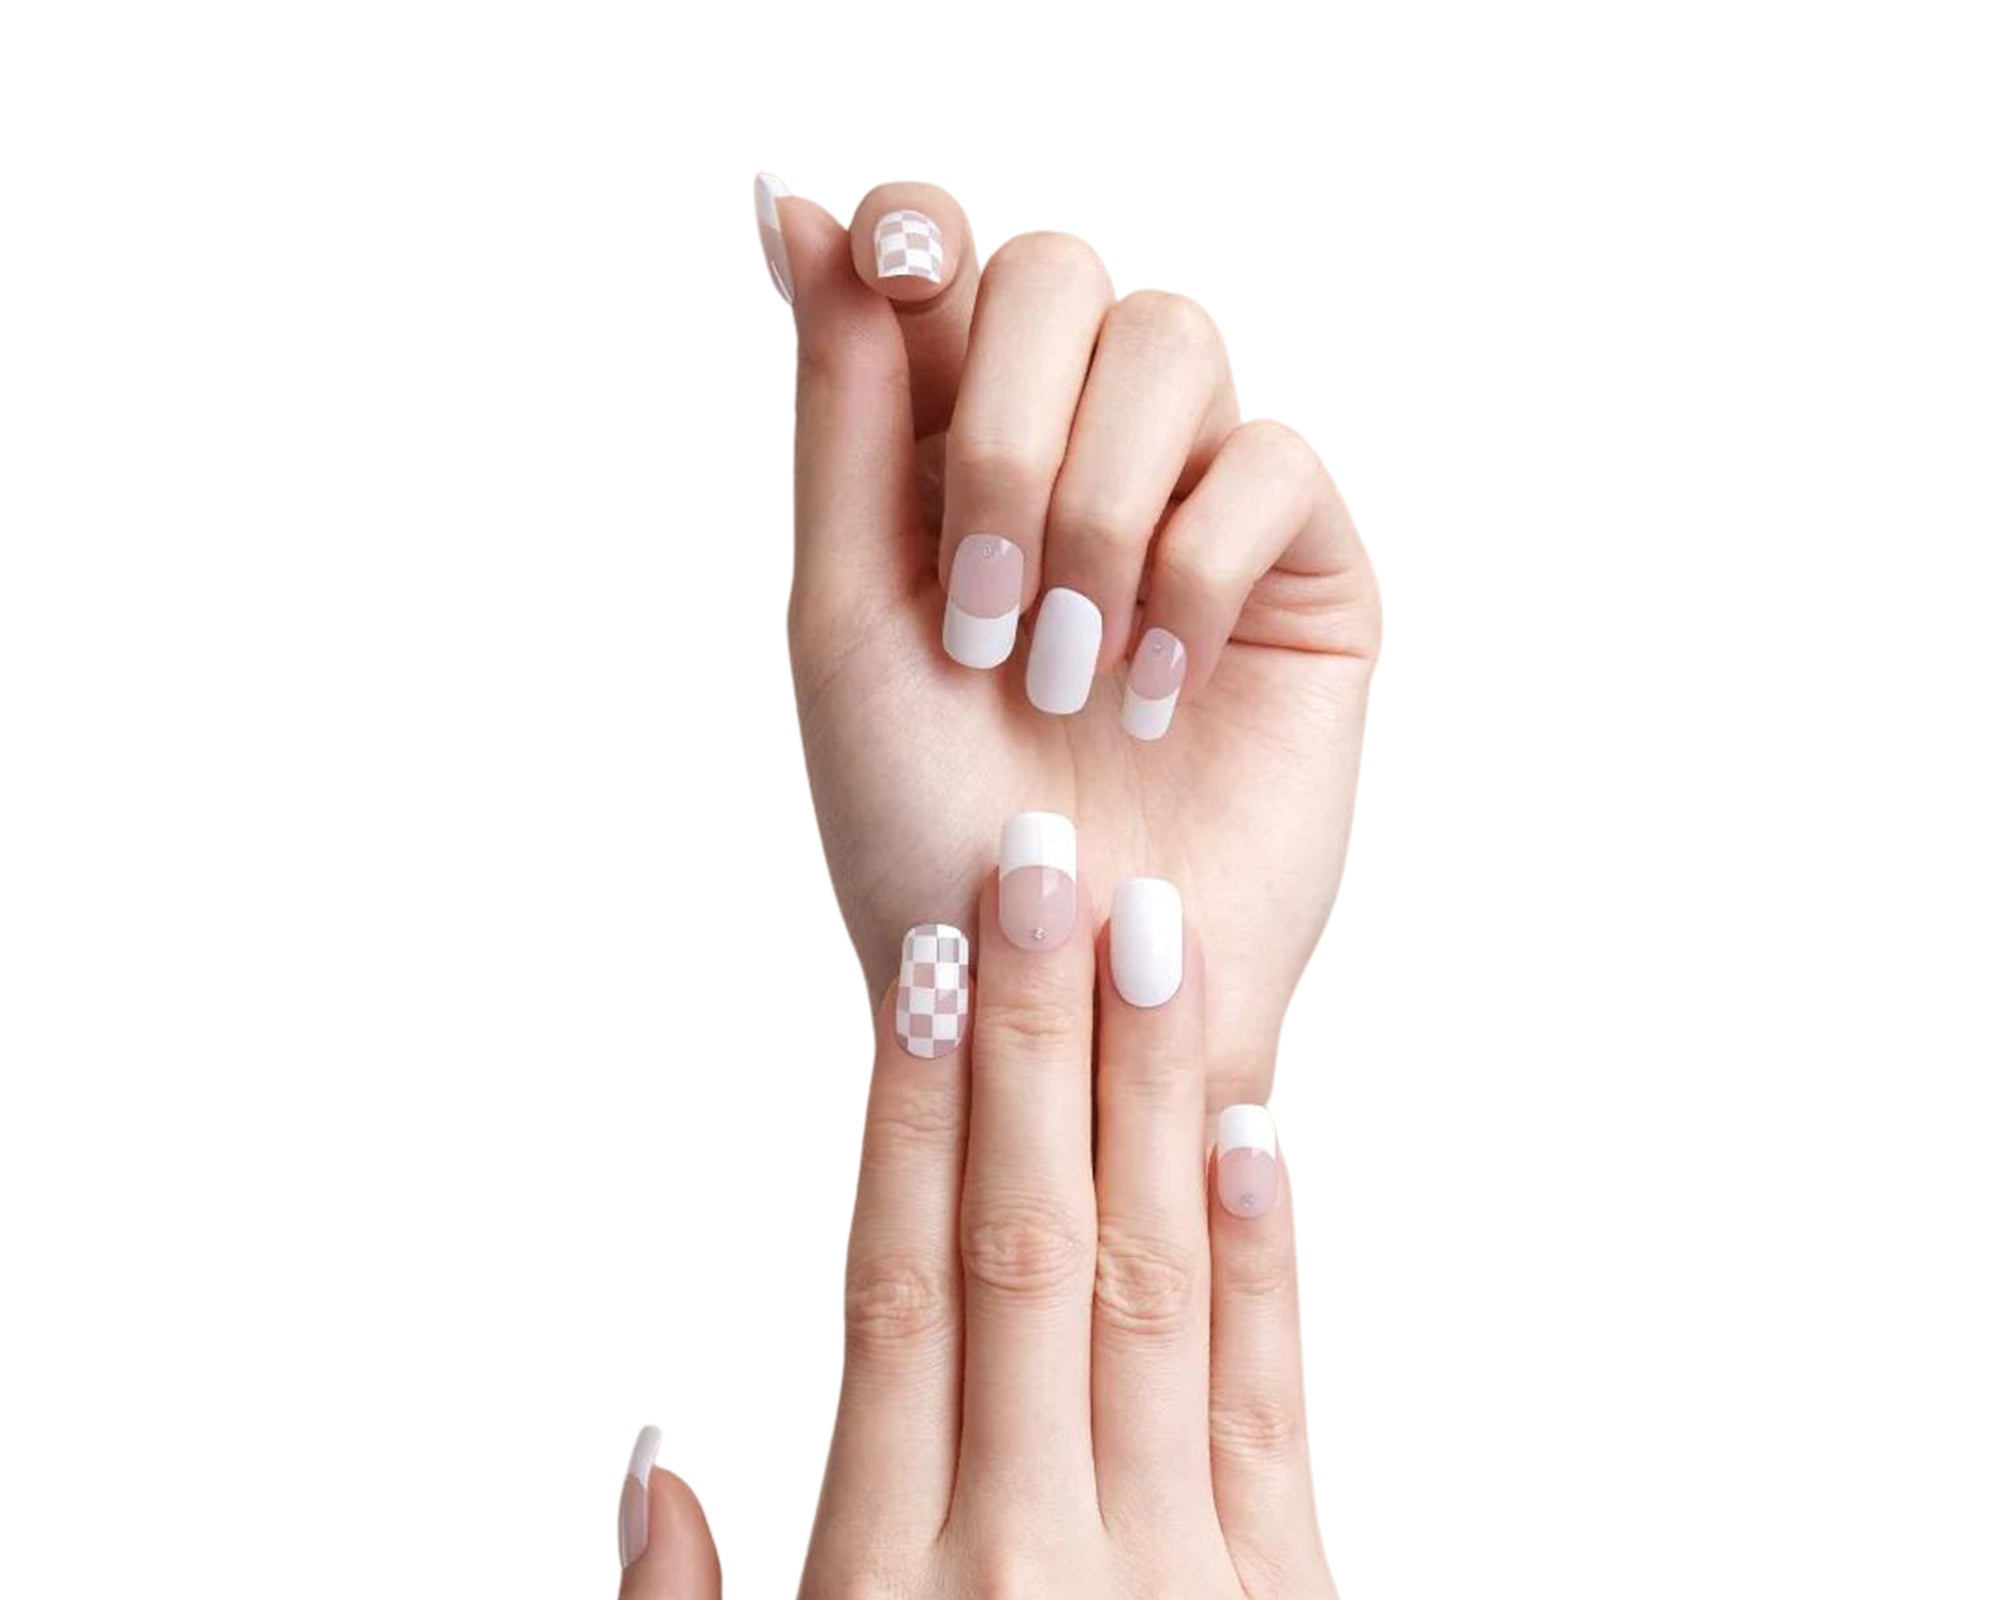 Découvrez le Kit d'Ongles Emano : une solution innovante et abordable pour sublimer vos ongles en un temps record. Notre technologie de gel semi-durci réagit parfaitement sous une lampe UV, préservant ainsi la santé naturelle de vos ongles.